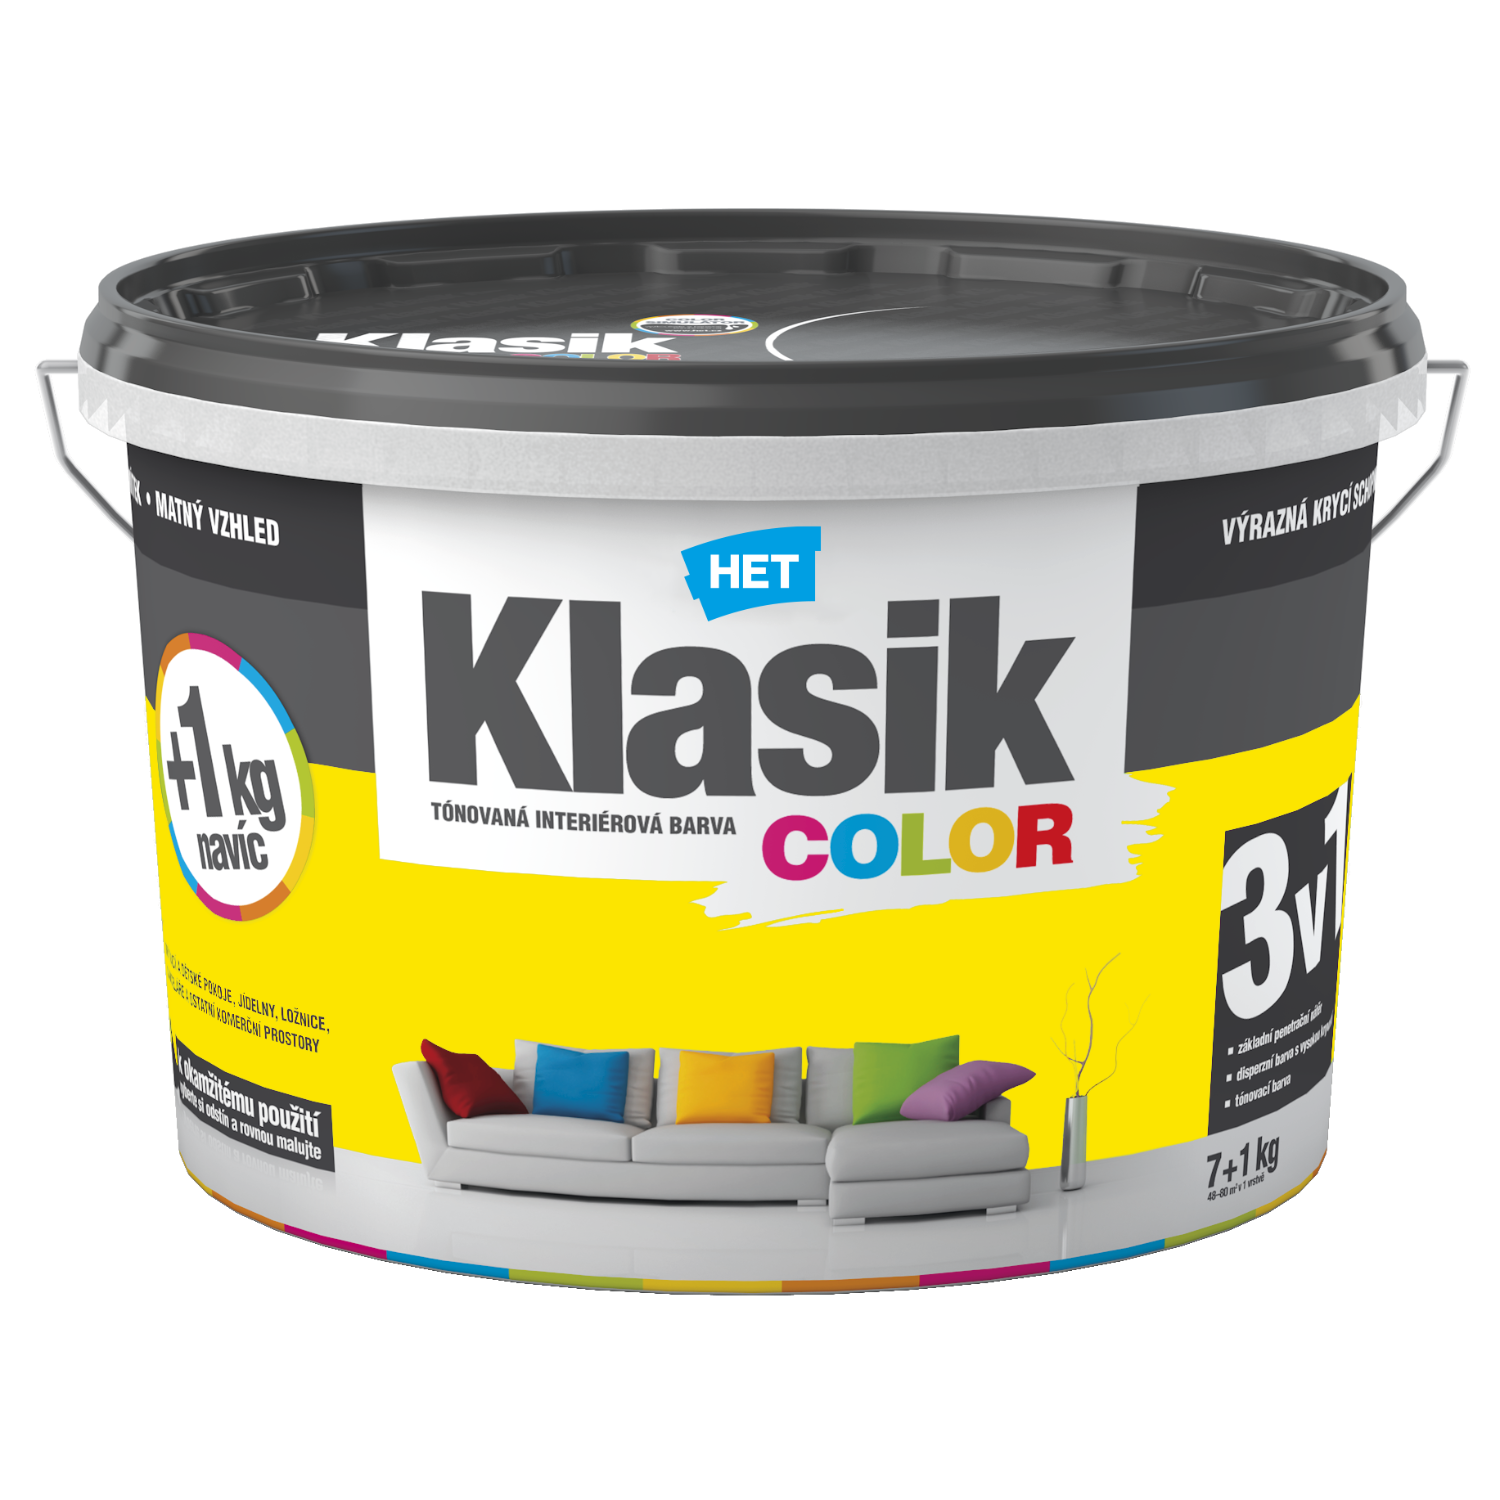 HET Klasik COLOR tónovaná interiérová akrylátová disperzná oteruvzdorná farba 7 kg + 1 kg zdarma, KC0608 - žltý zázvorový